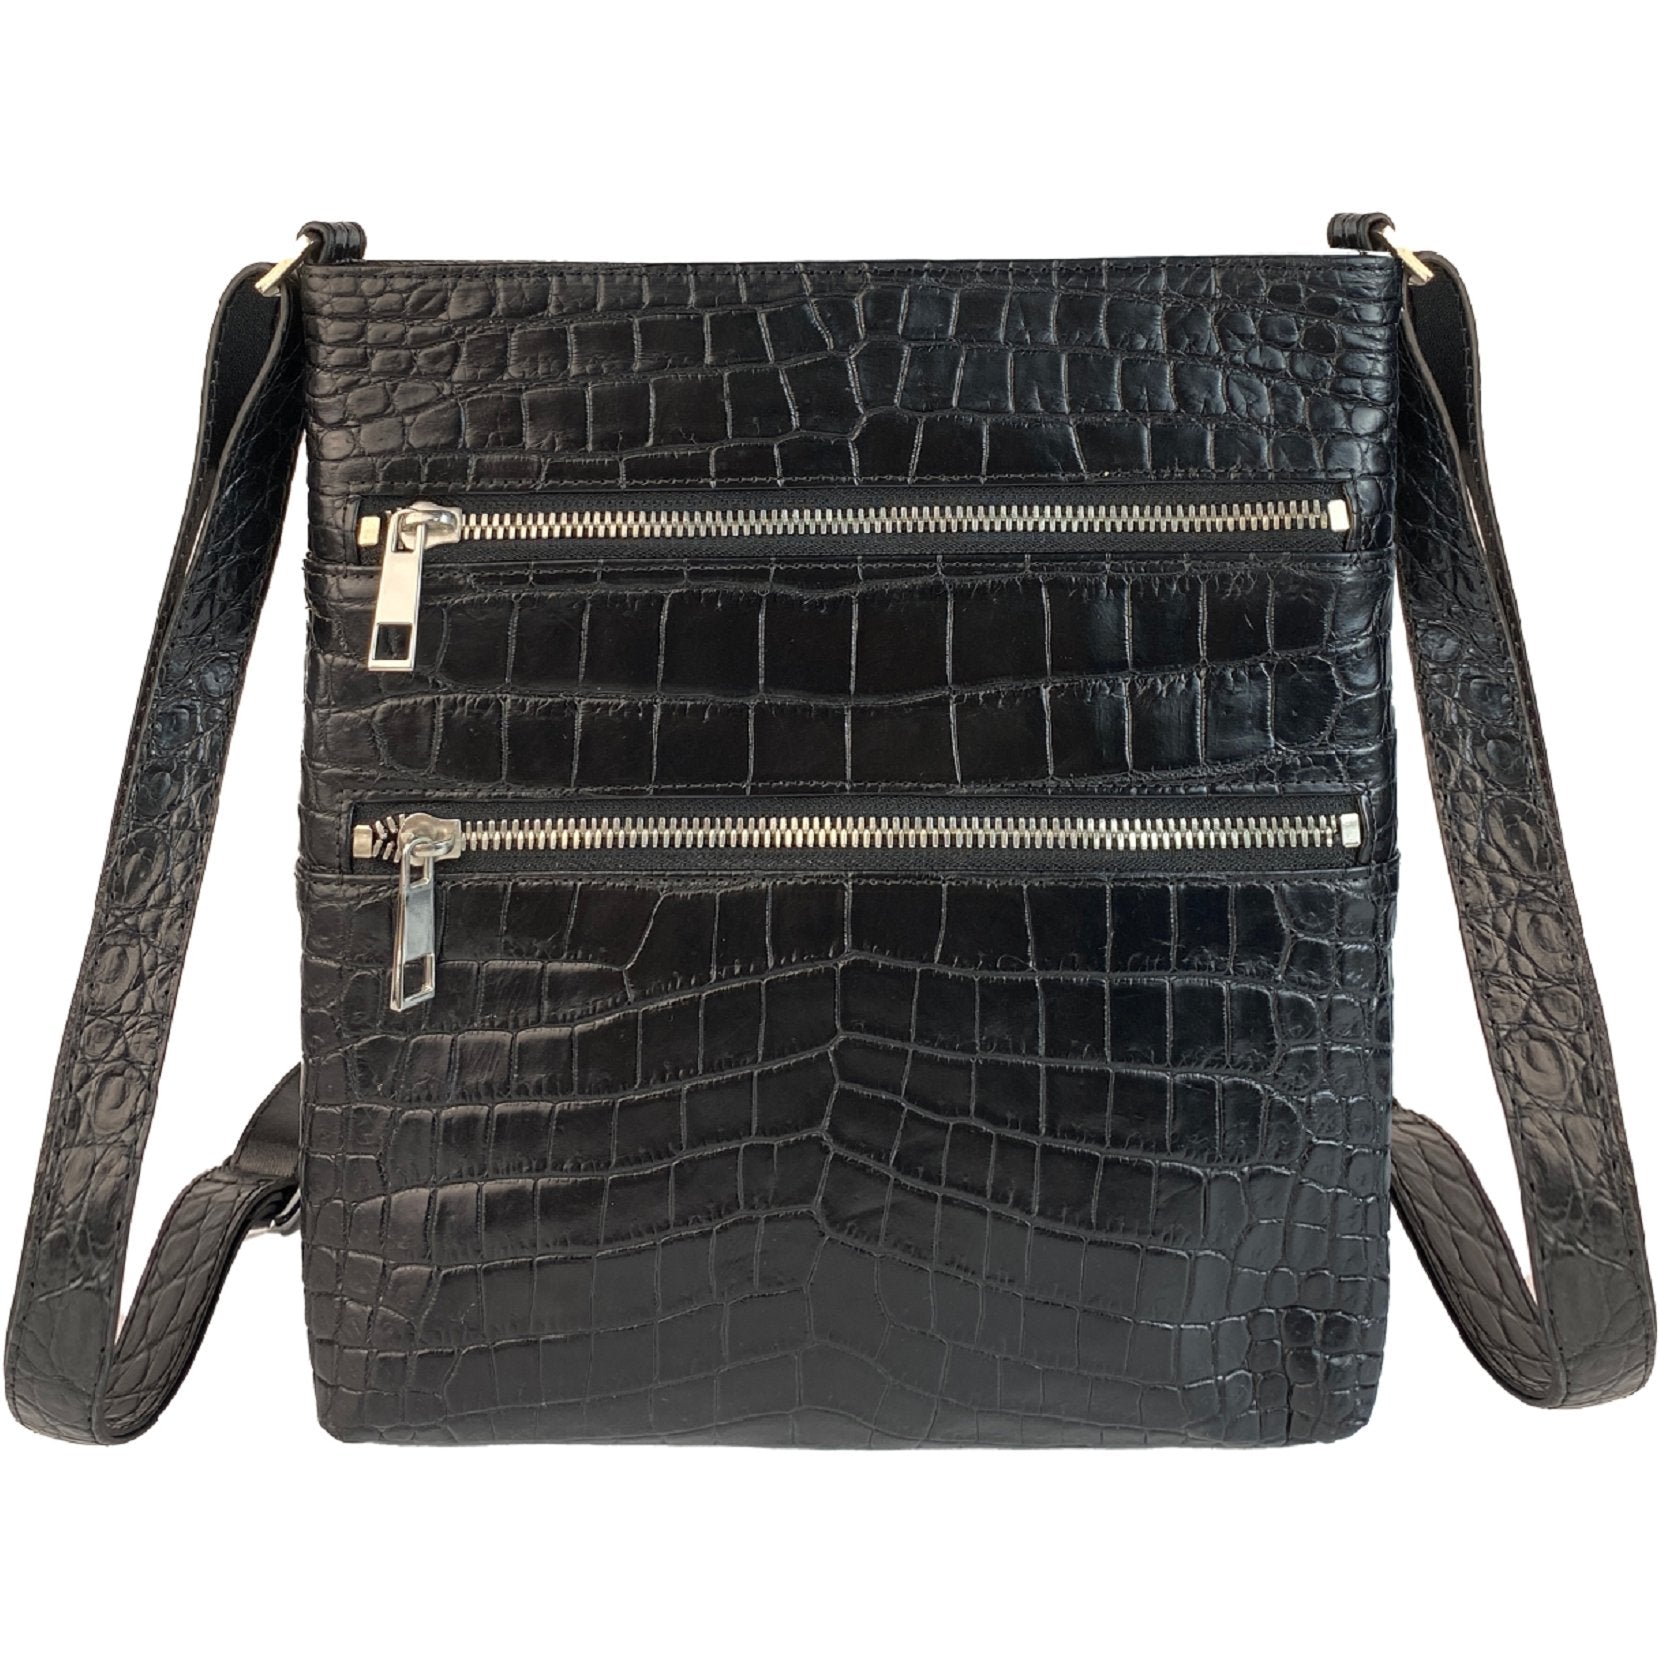 Black Alligator Leather Mens Crossbody Shoulder bag, Vertical Satchel Bag Casual, Small Messenger Bag Christmas Gift For Him - Vinacreations